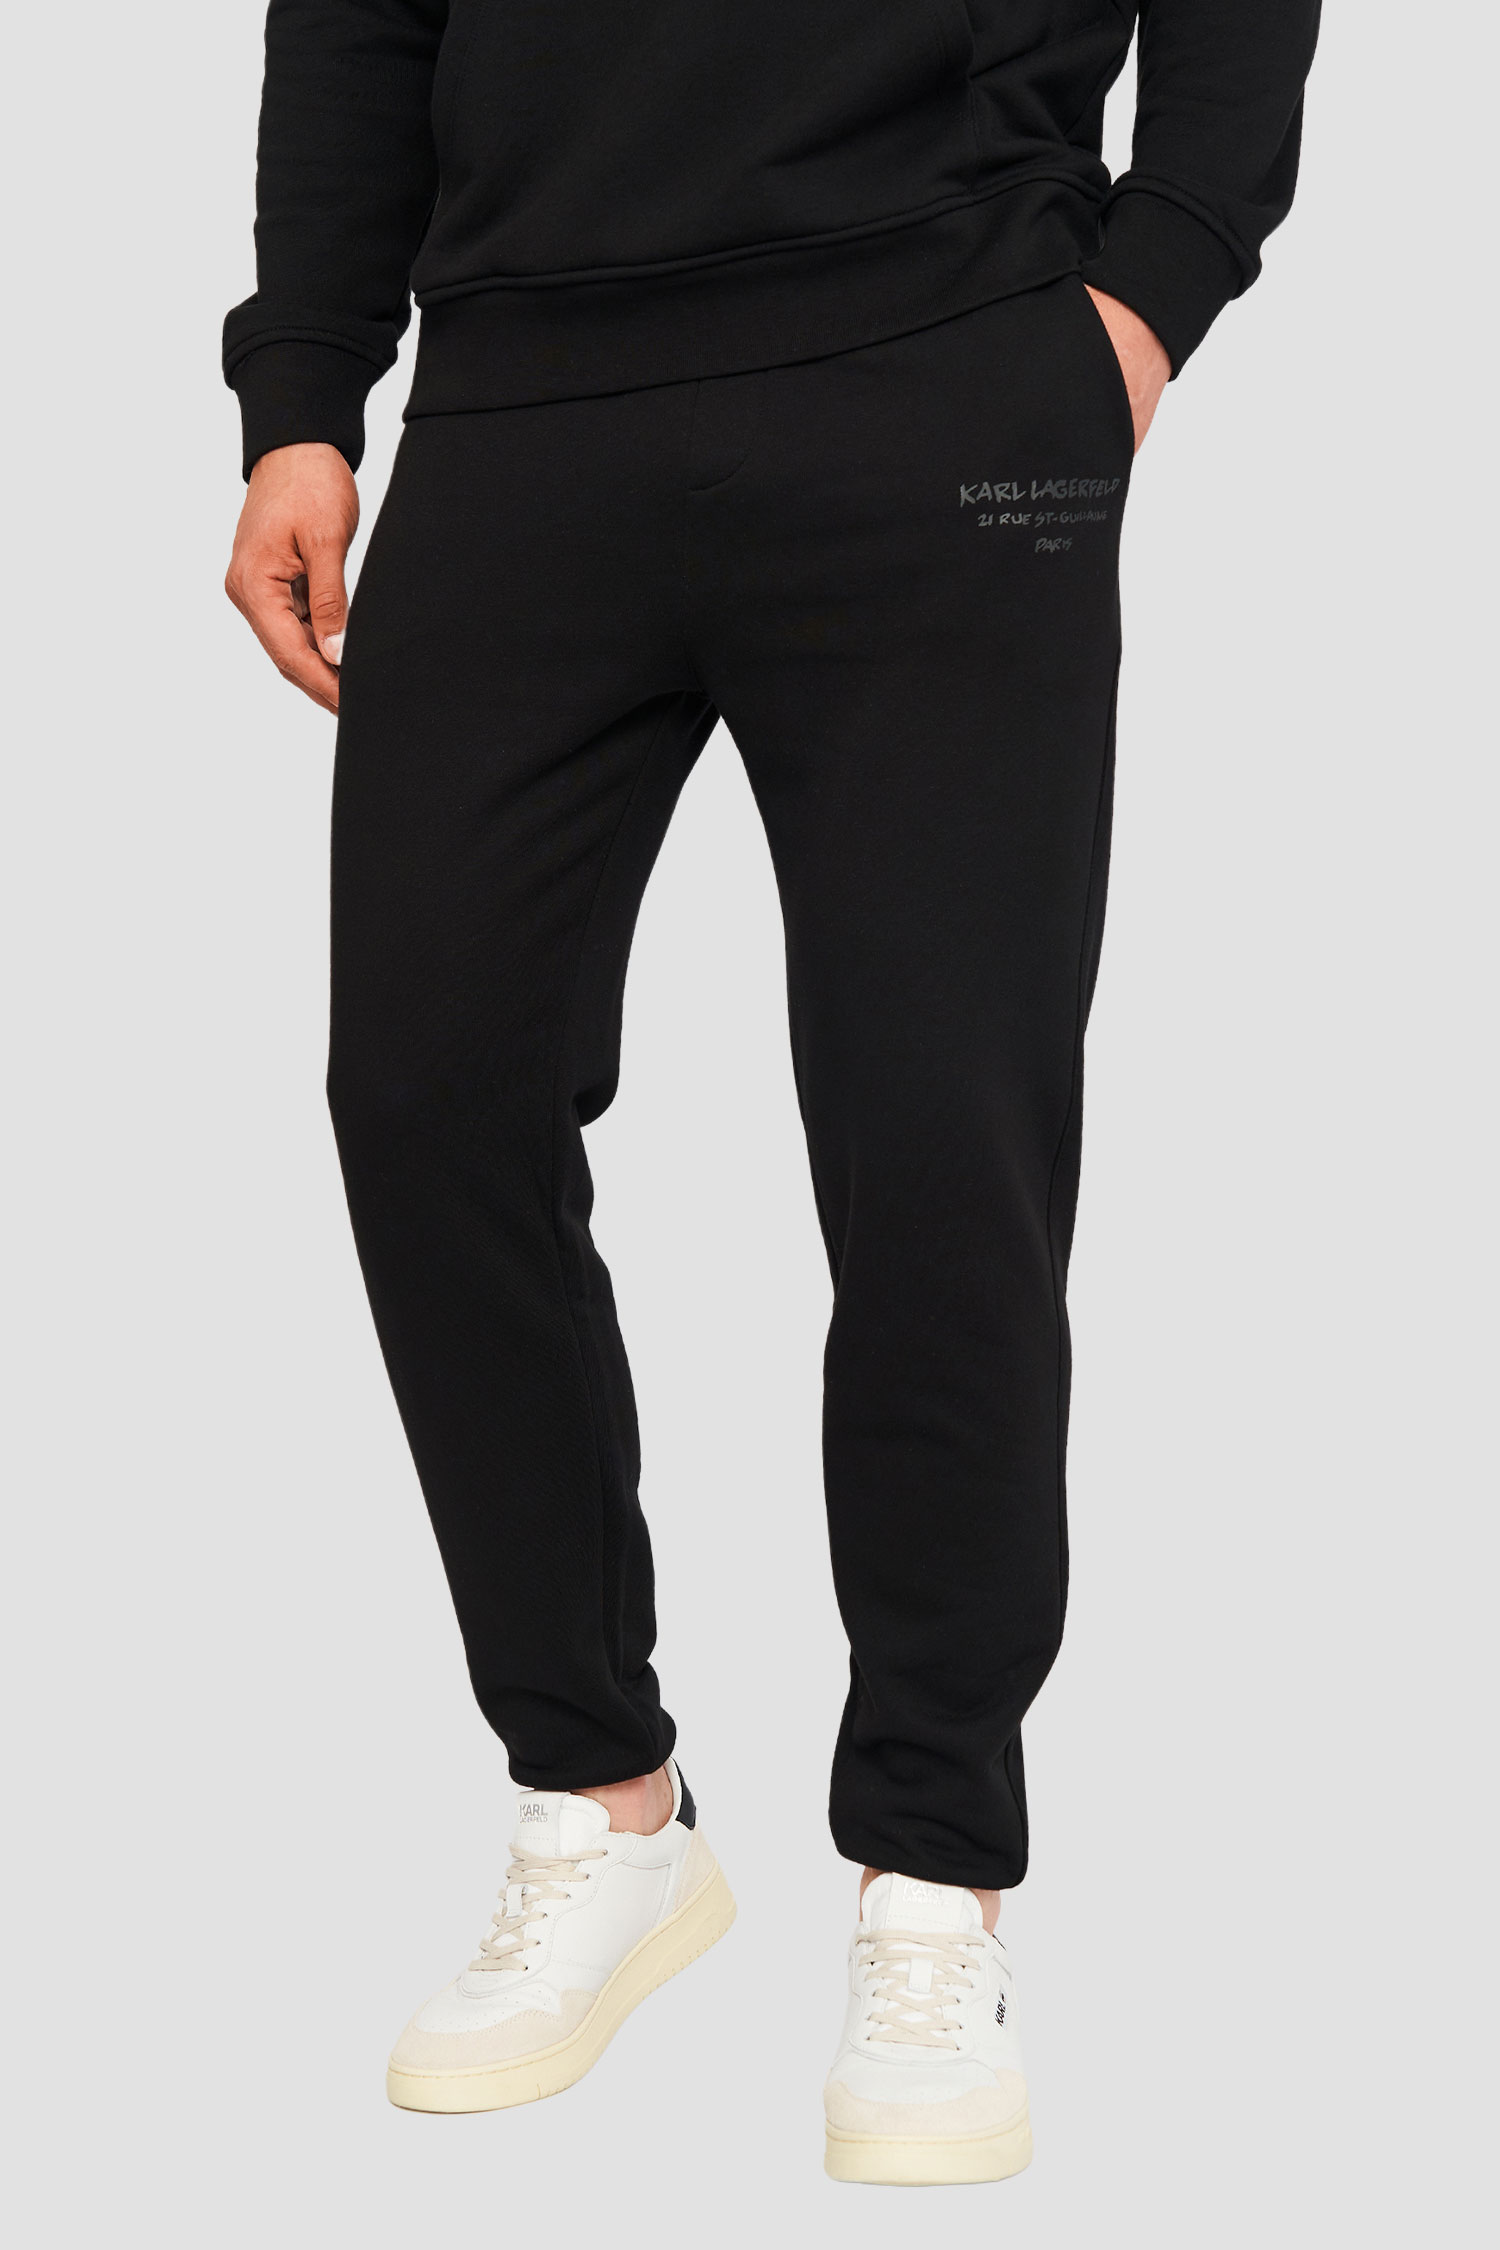 Чоловічі чорні спортивні штани Karl Lagerfeld 533910.705412;990